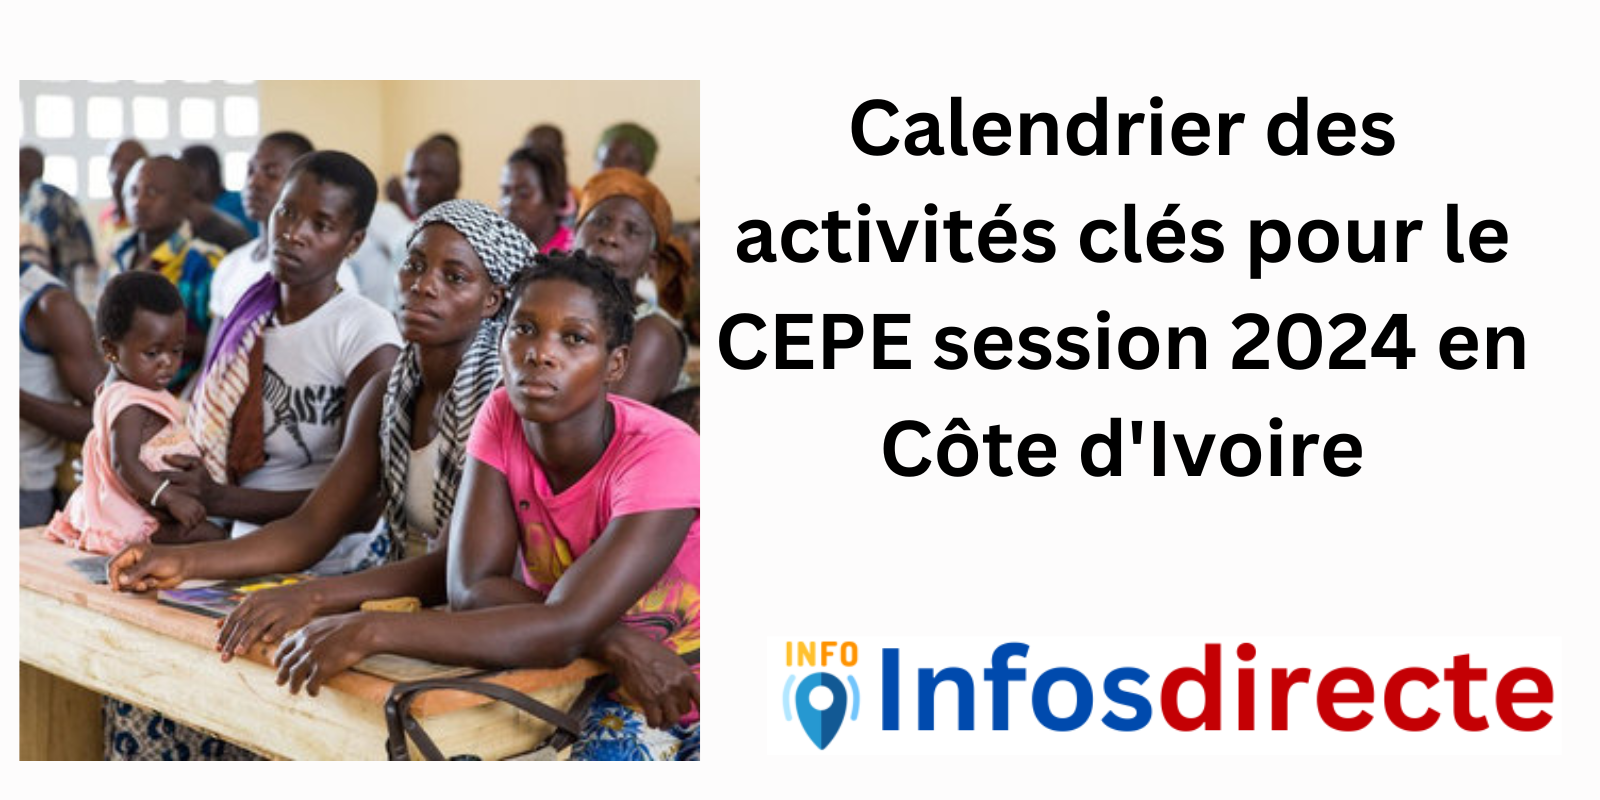 Calendrier des activités clés pour le CEPE session 2024 en Côte d'Ivoire